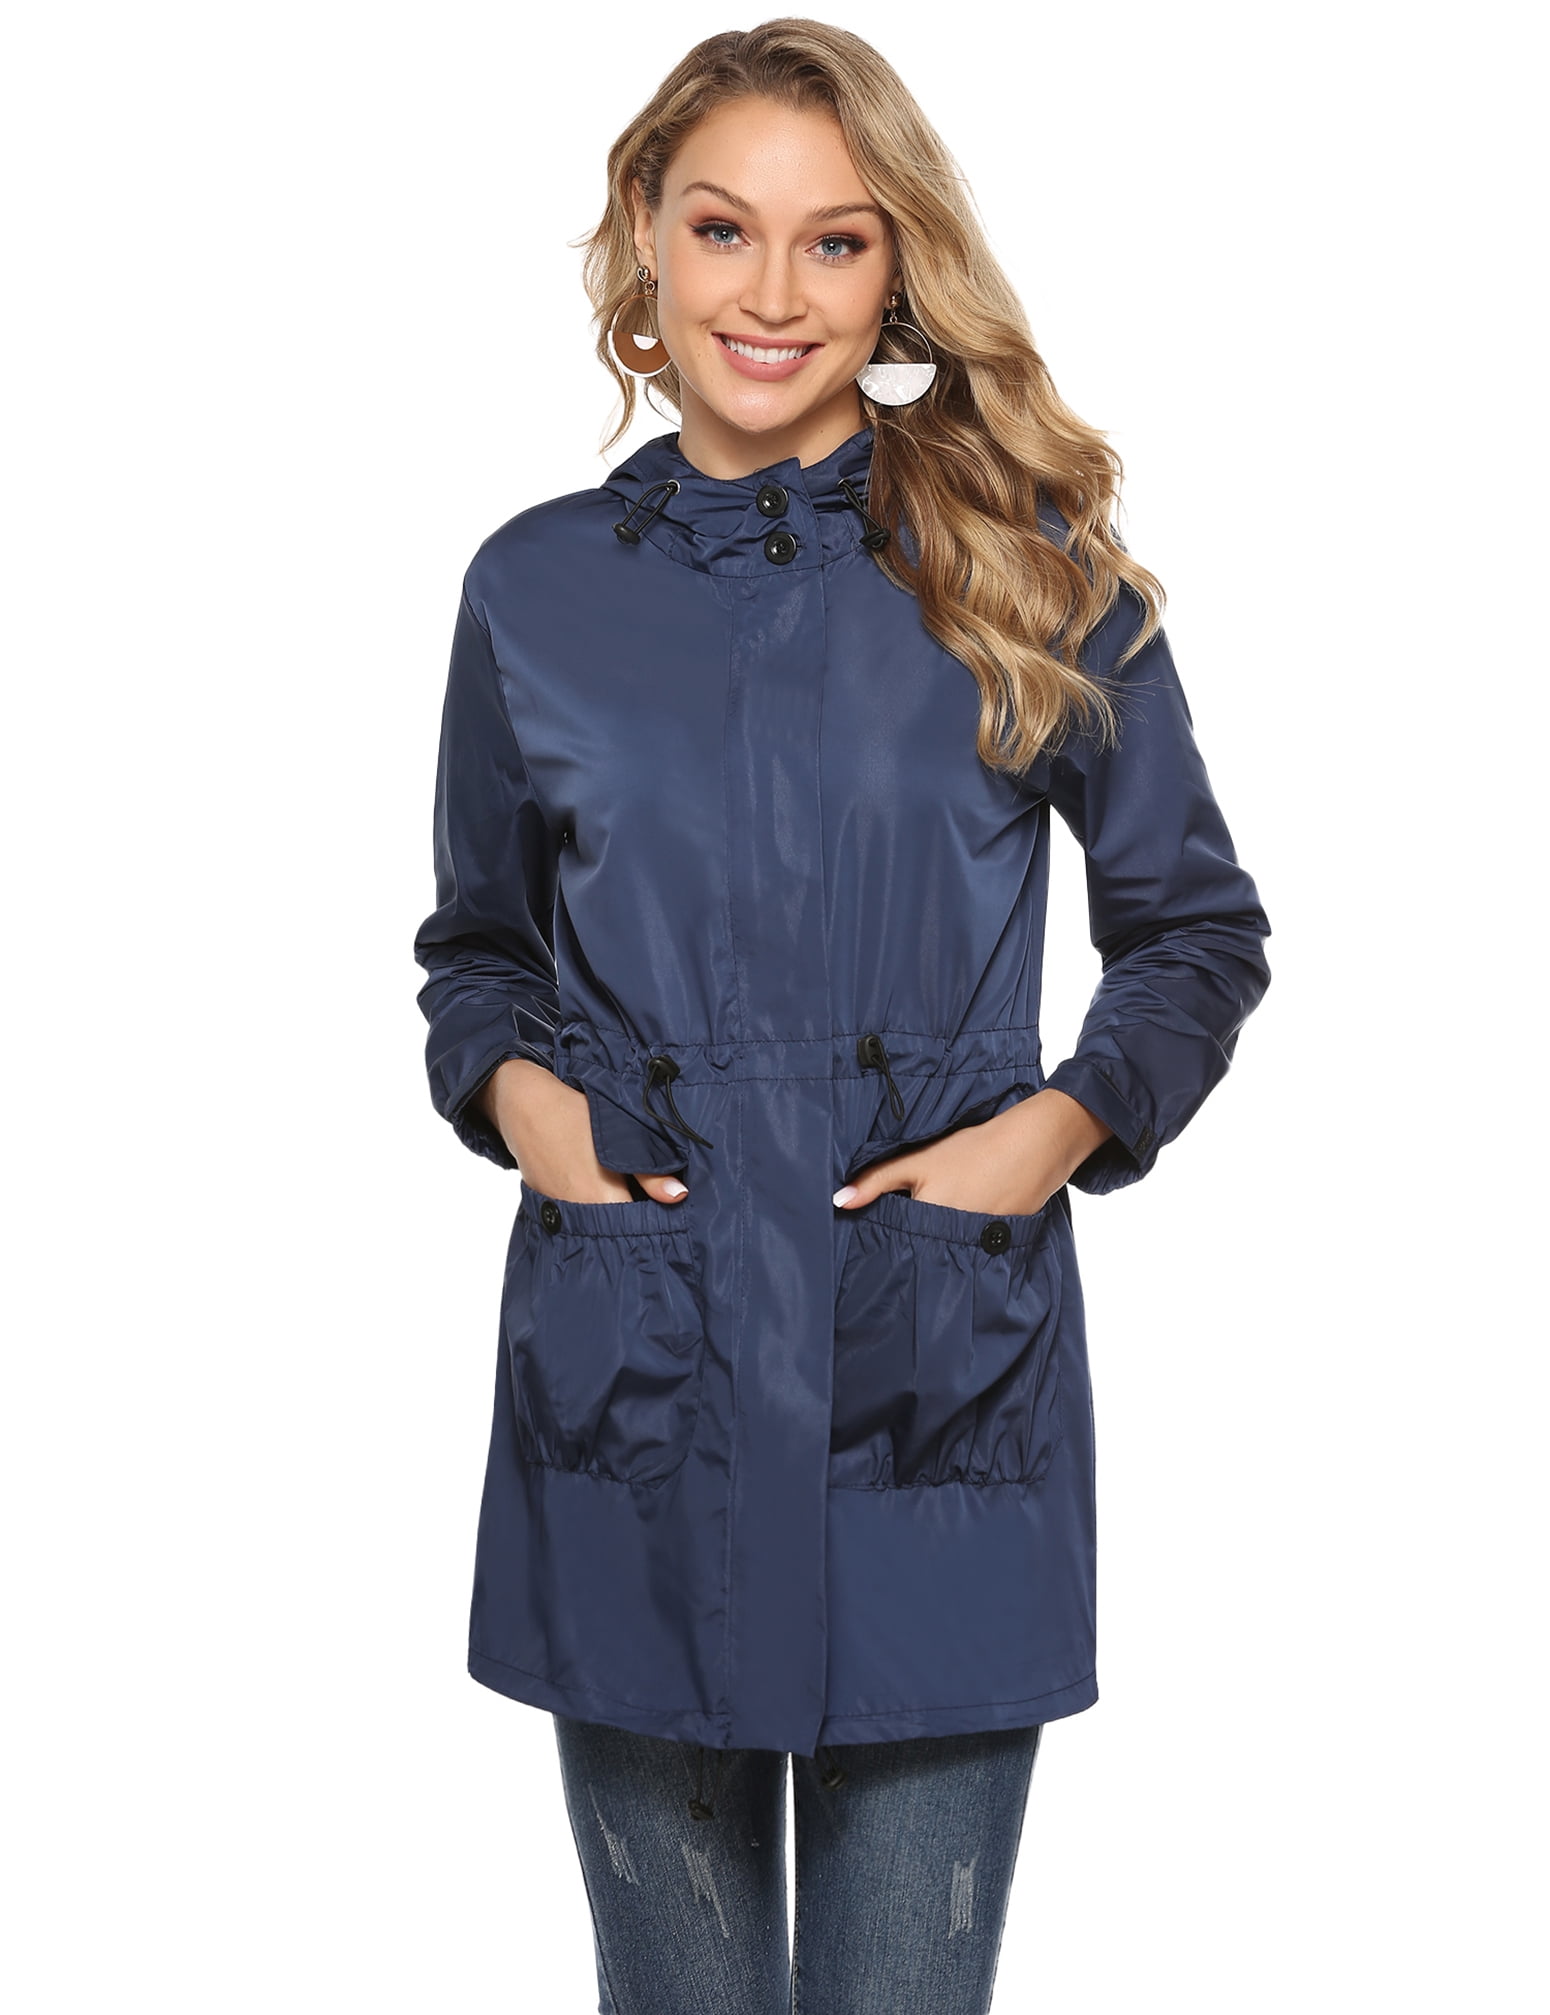 Akalnny Womens Waterproof Rain Jacket Windproof Autumn Coat Lightweight Waterproof Hooded Jacket 